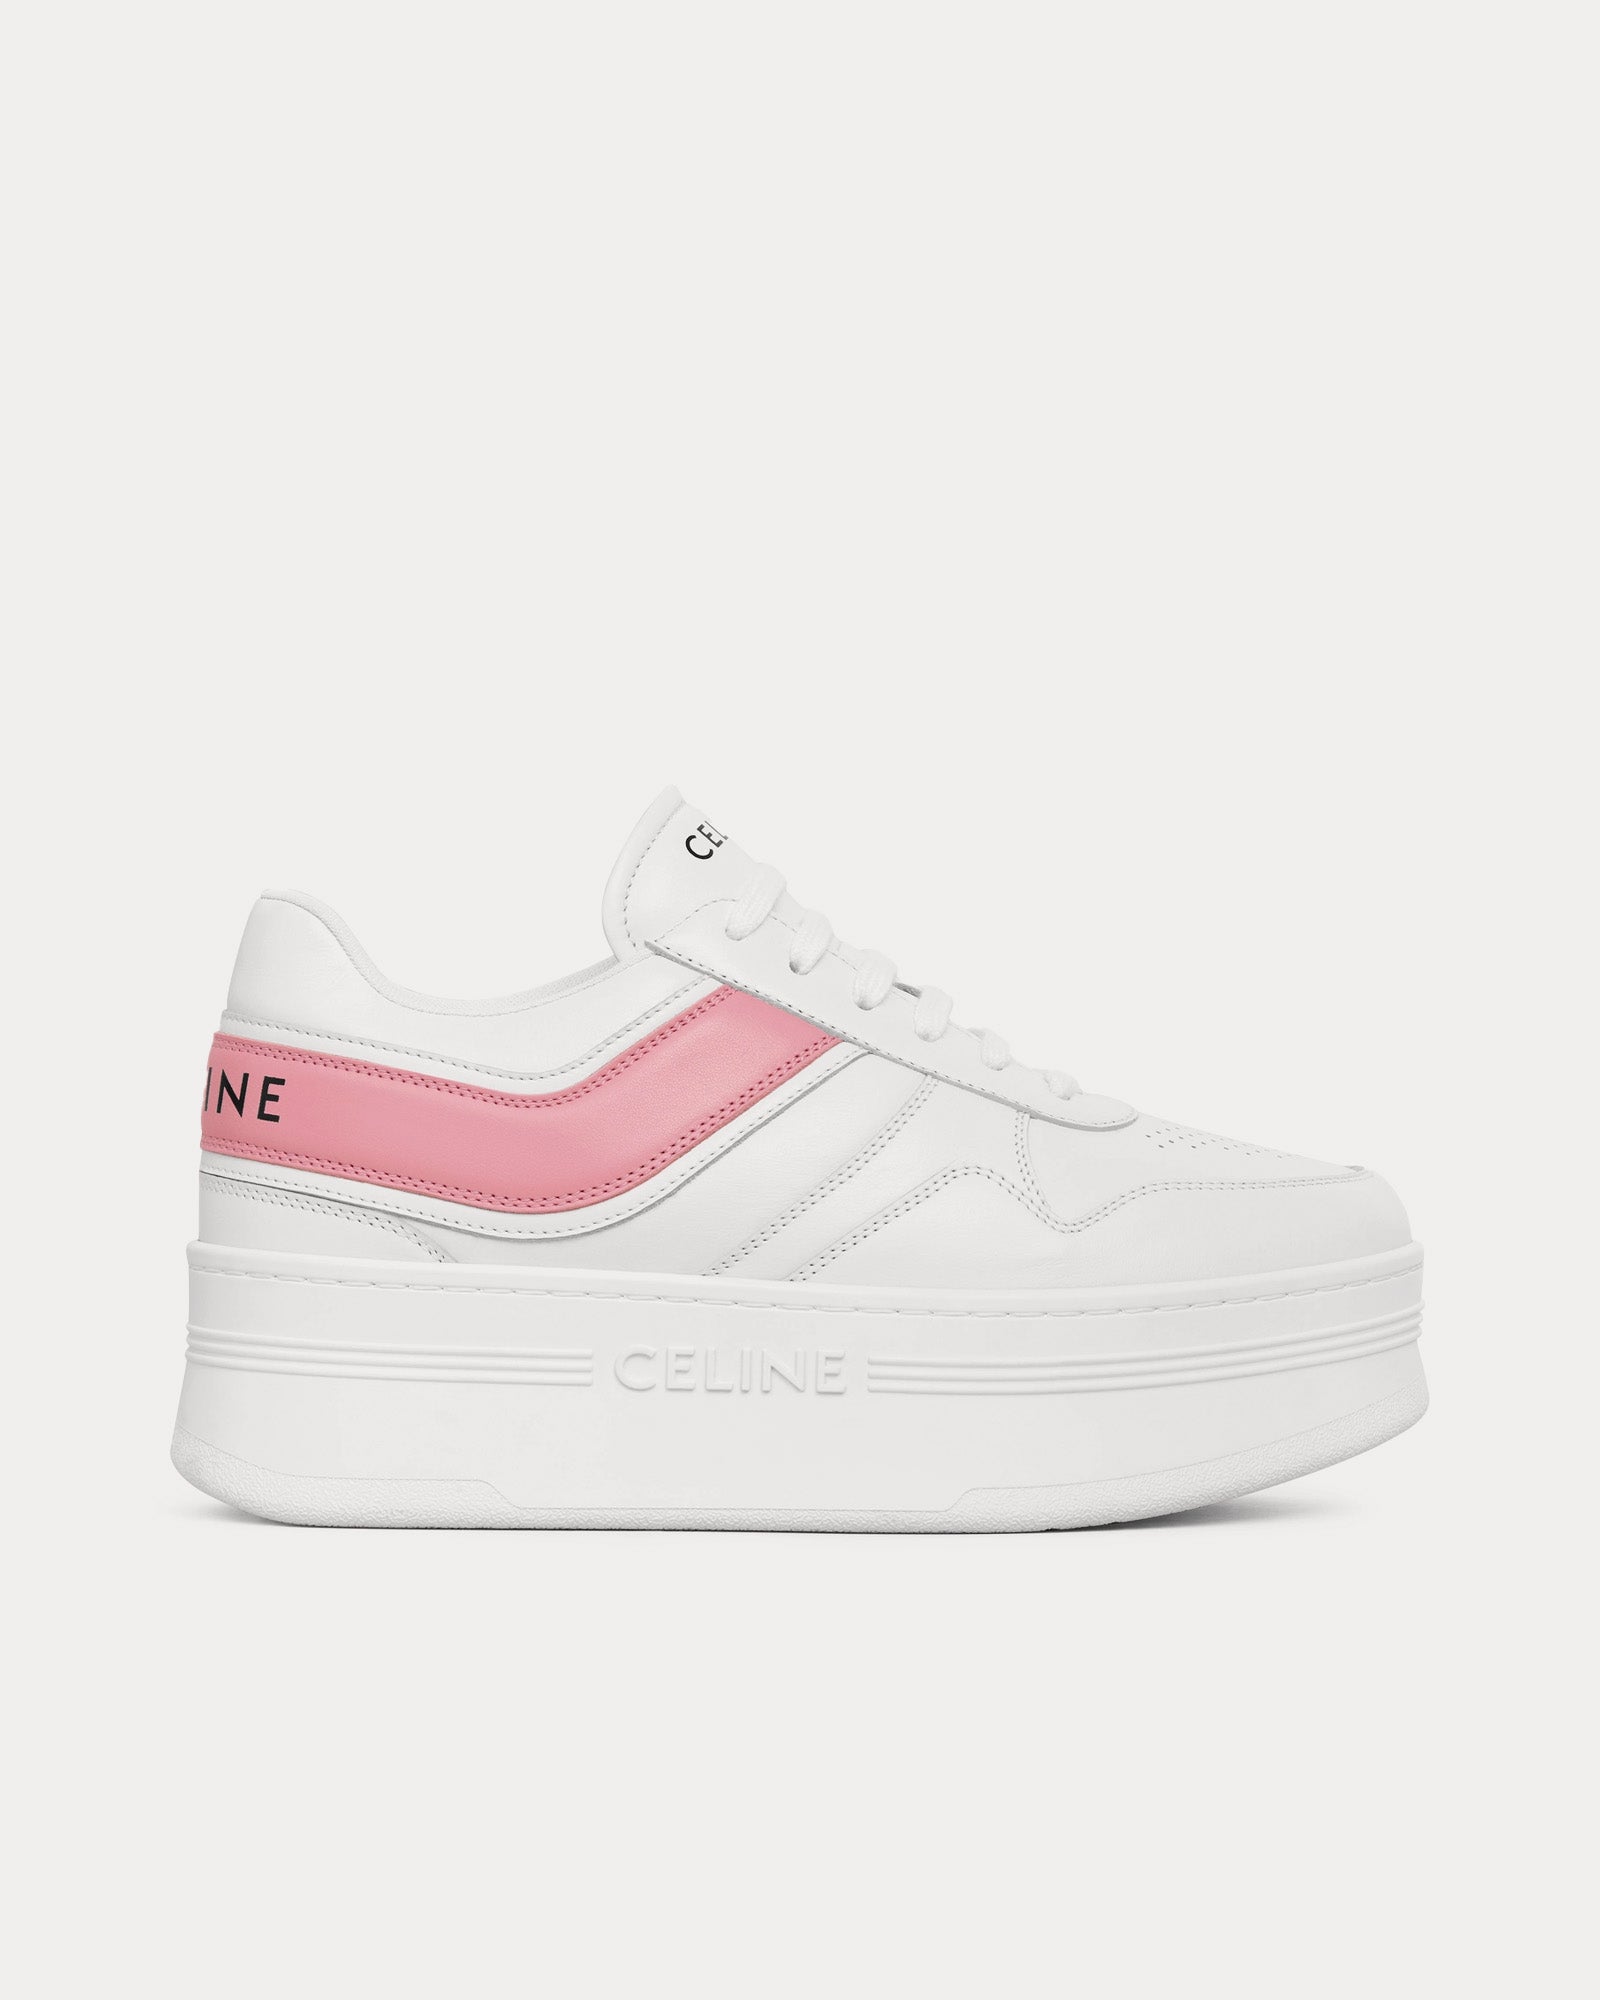 Celine - Block Wedge Calfskin Optic White / Pink Low Top Sneakers